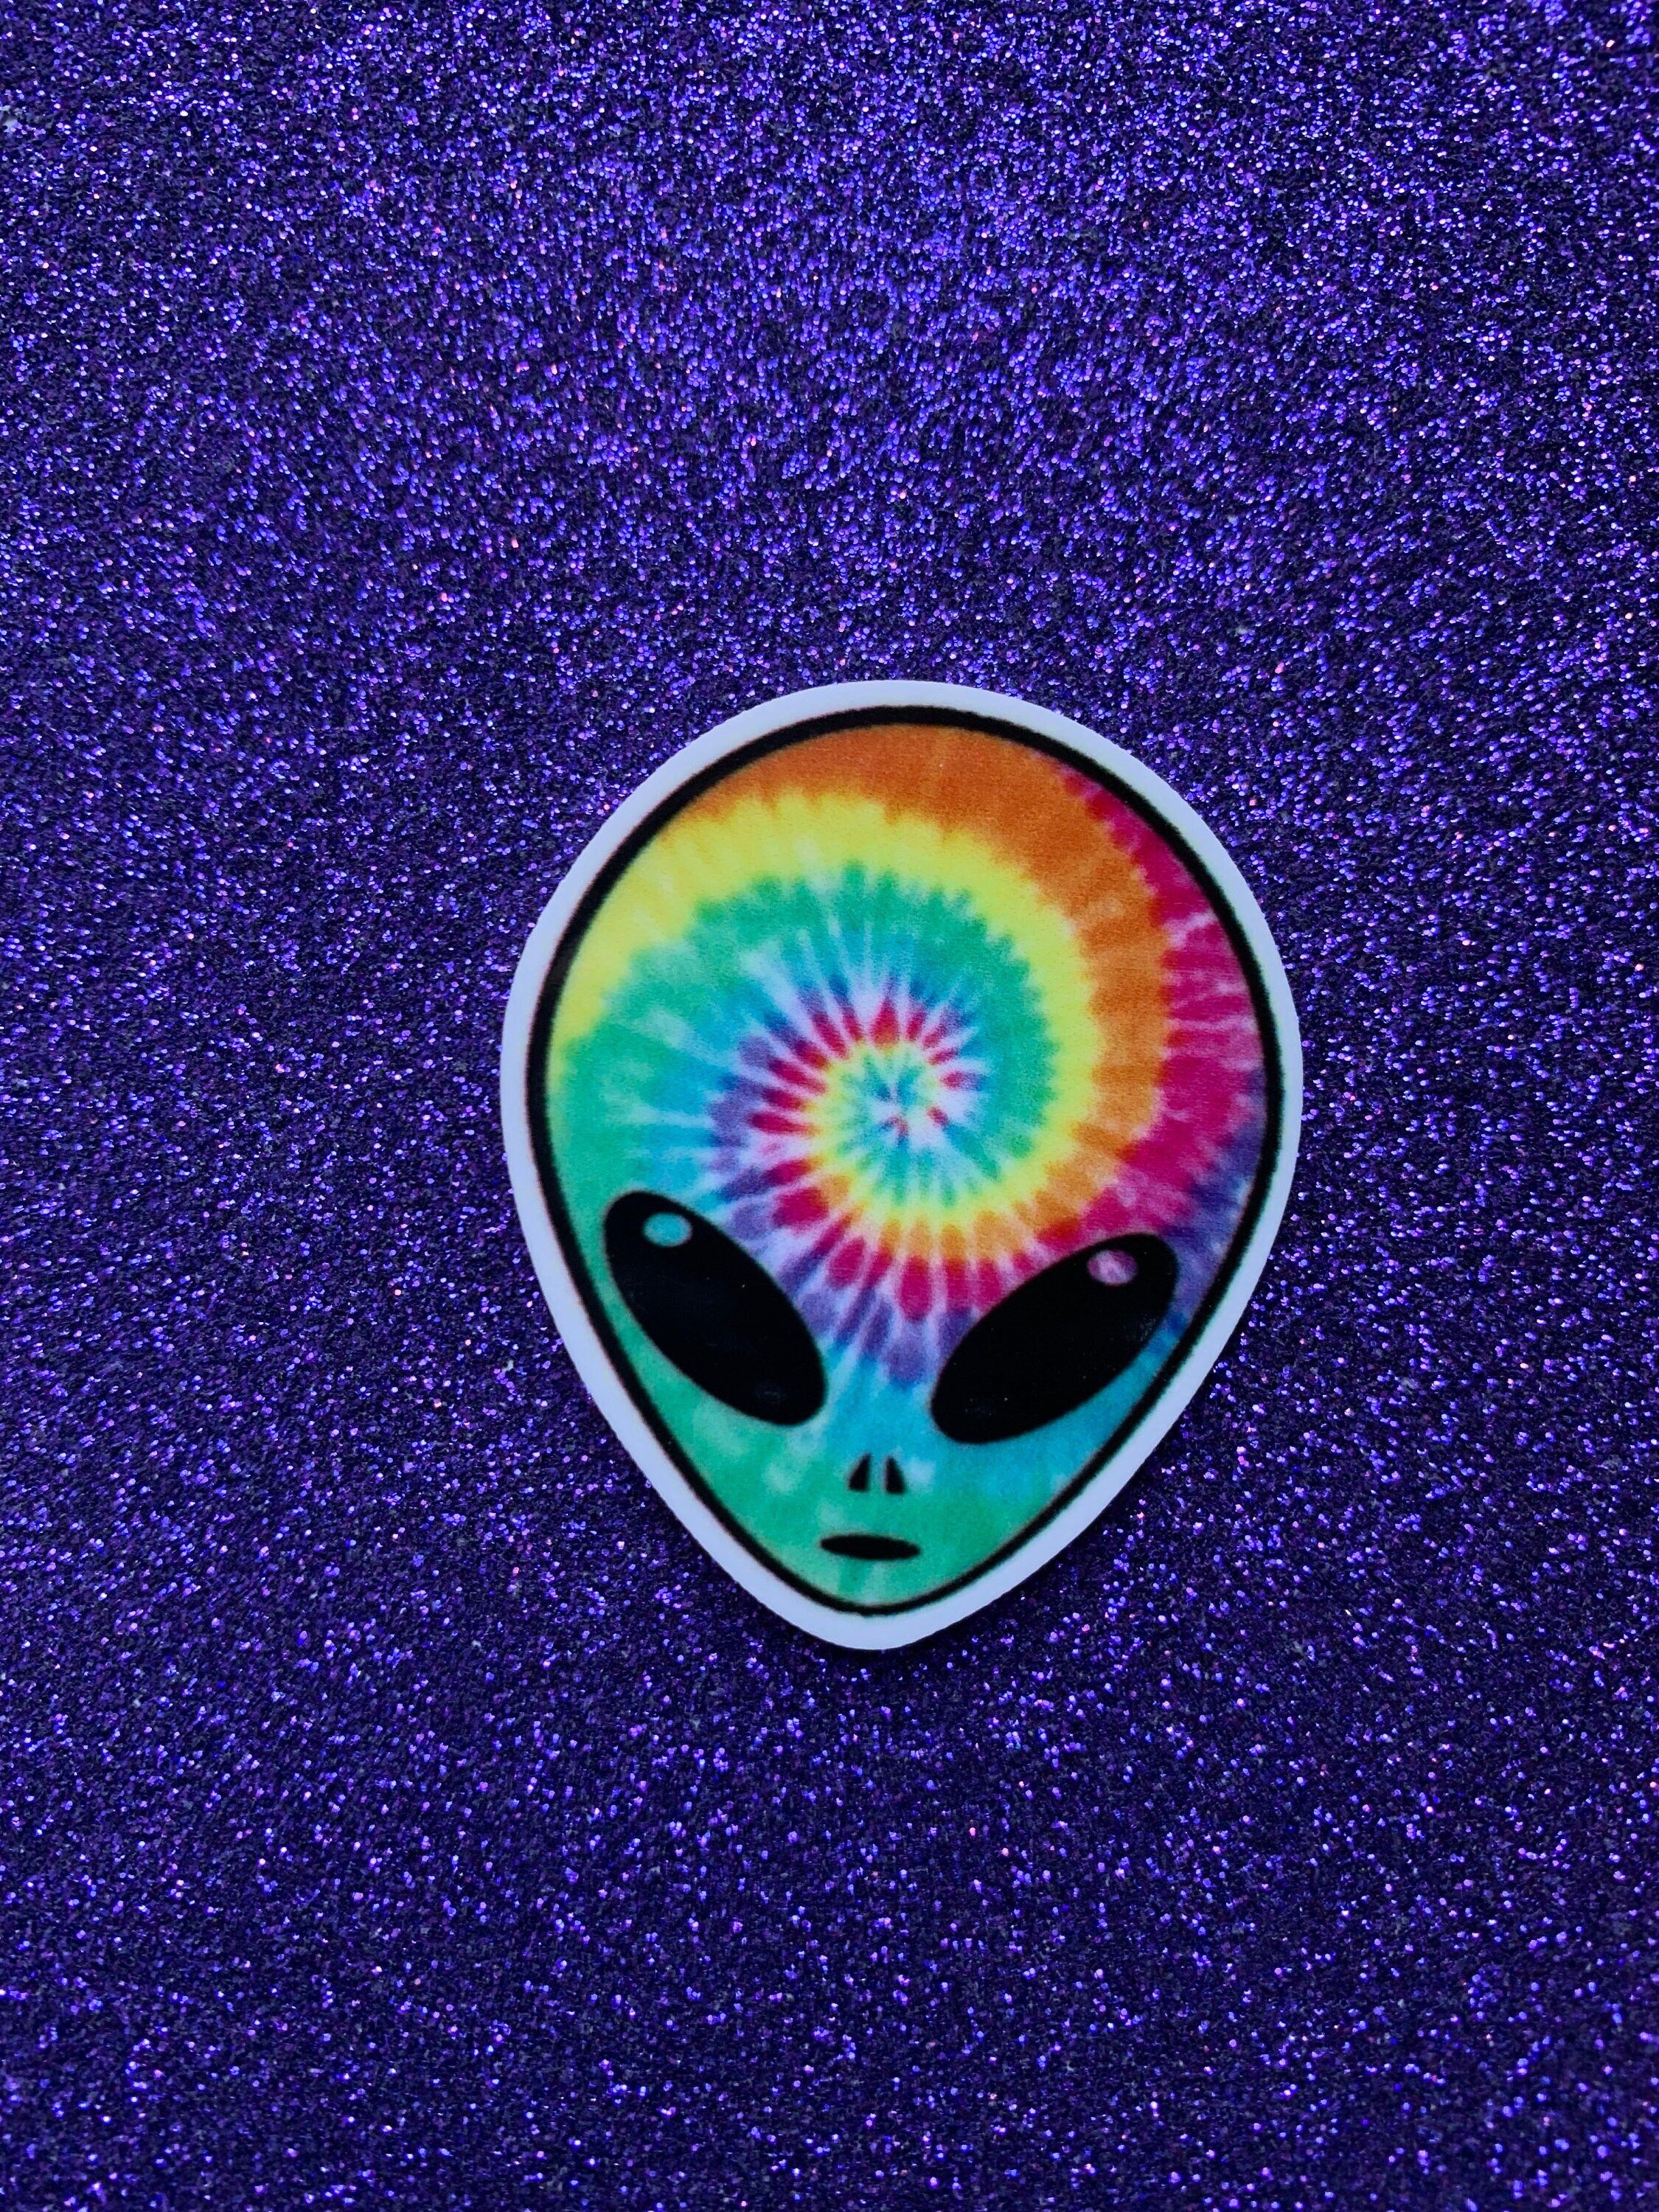 A sticker of a rainbow alien on a purple background - Alien